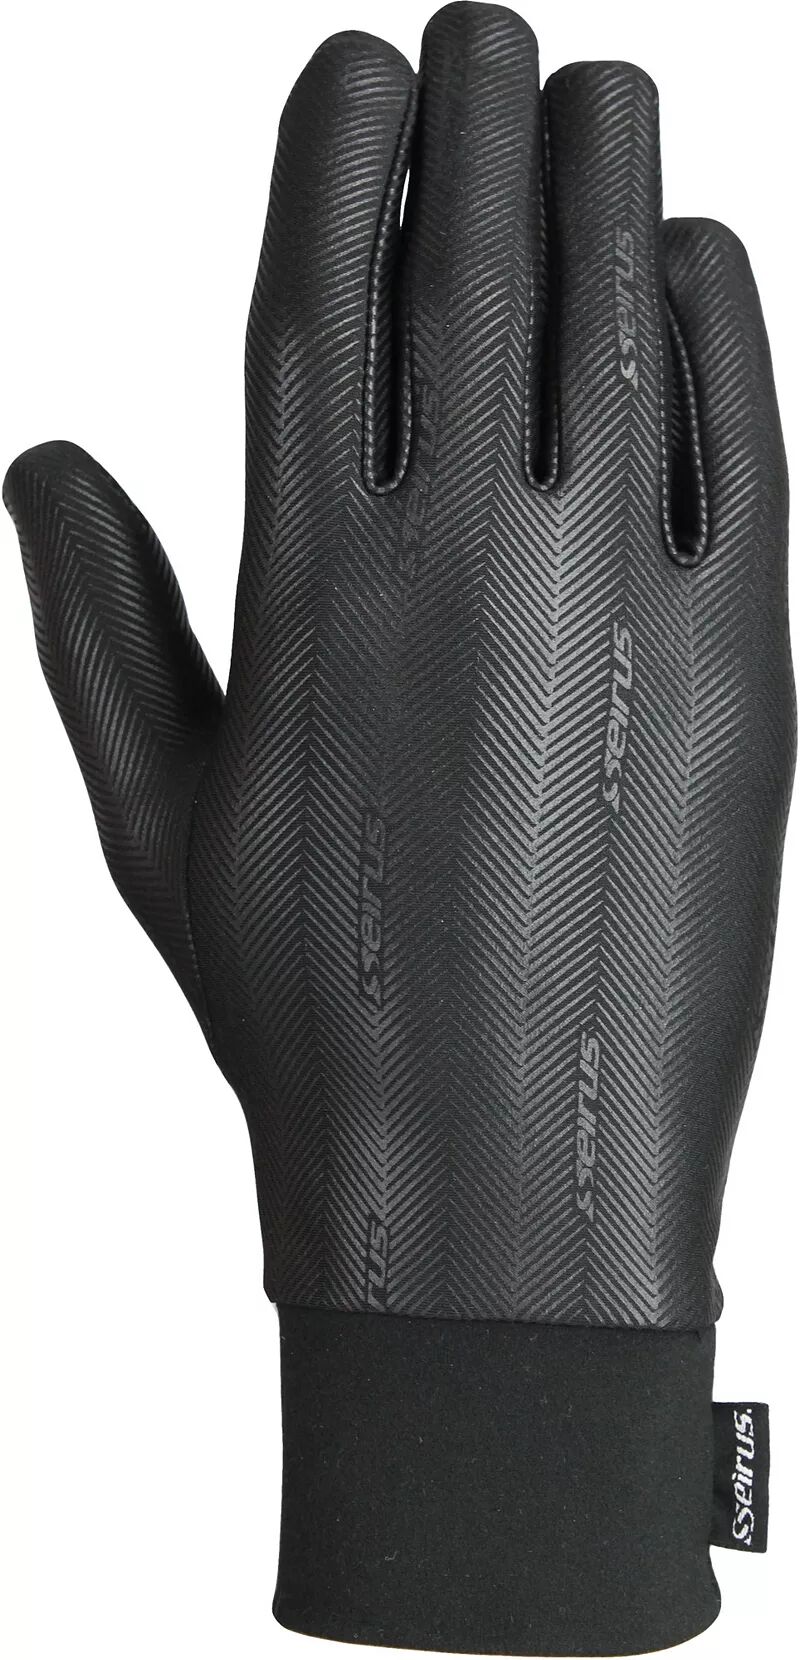 Seirus унисекс перчатки с подкладкой Heatwave